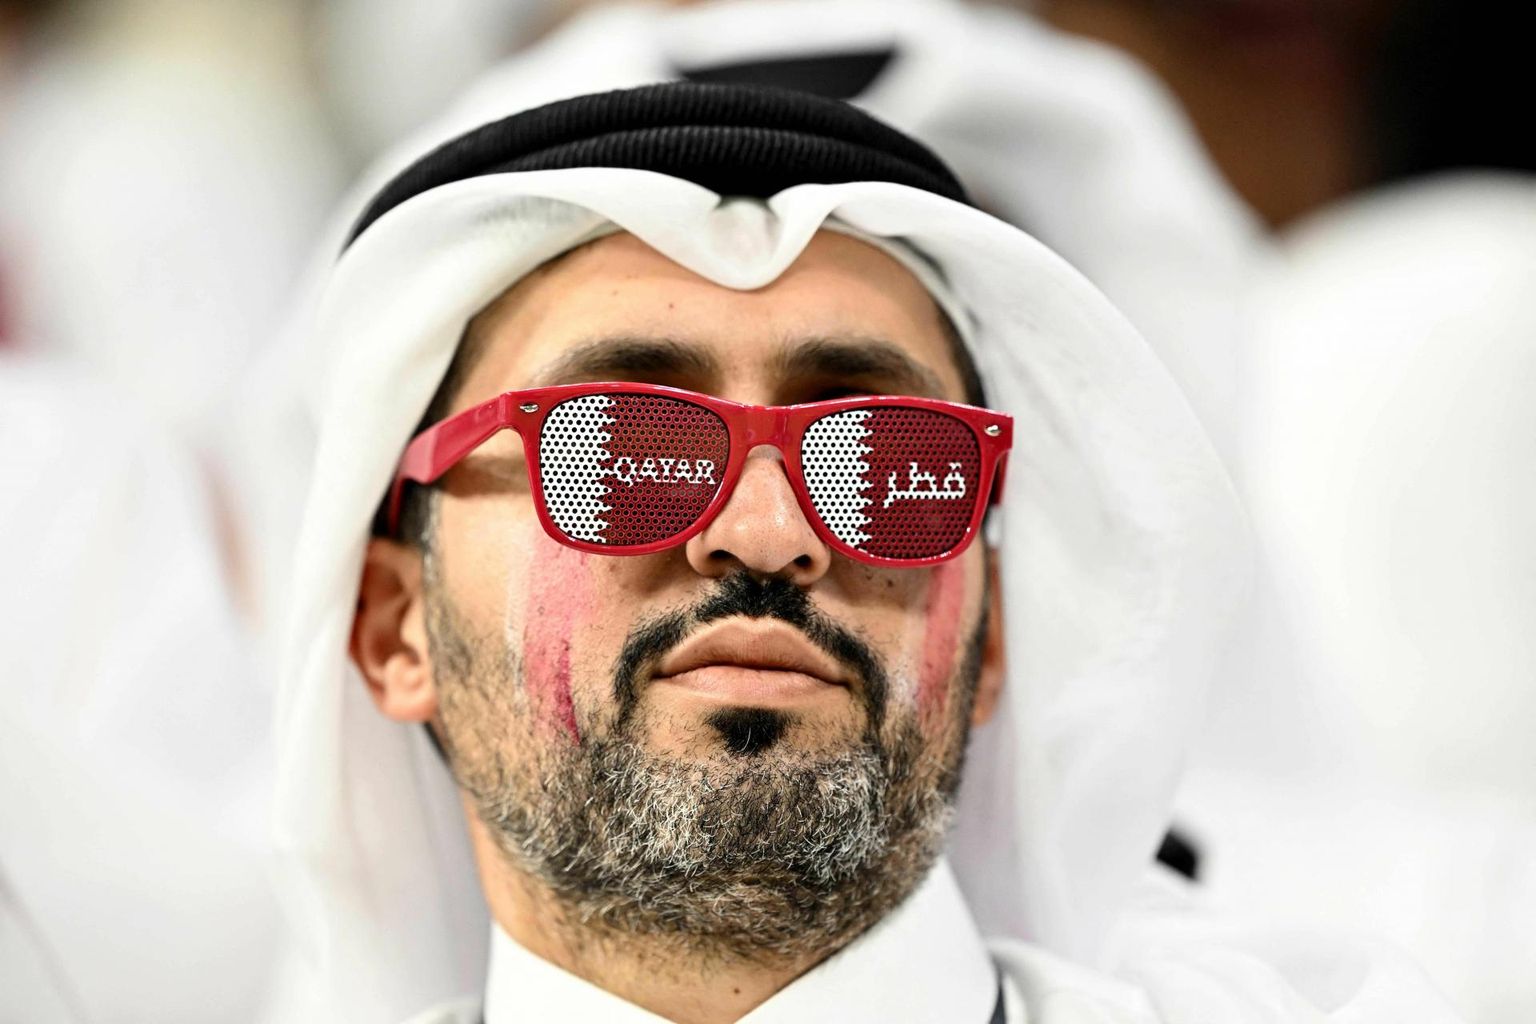 Katari jalgpallikoondise poolehoidja Ecuadori vastu peetud avamängu eel, mil korraldajamaa ootused olid veel laes.